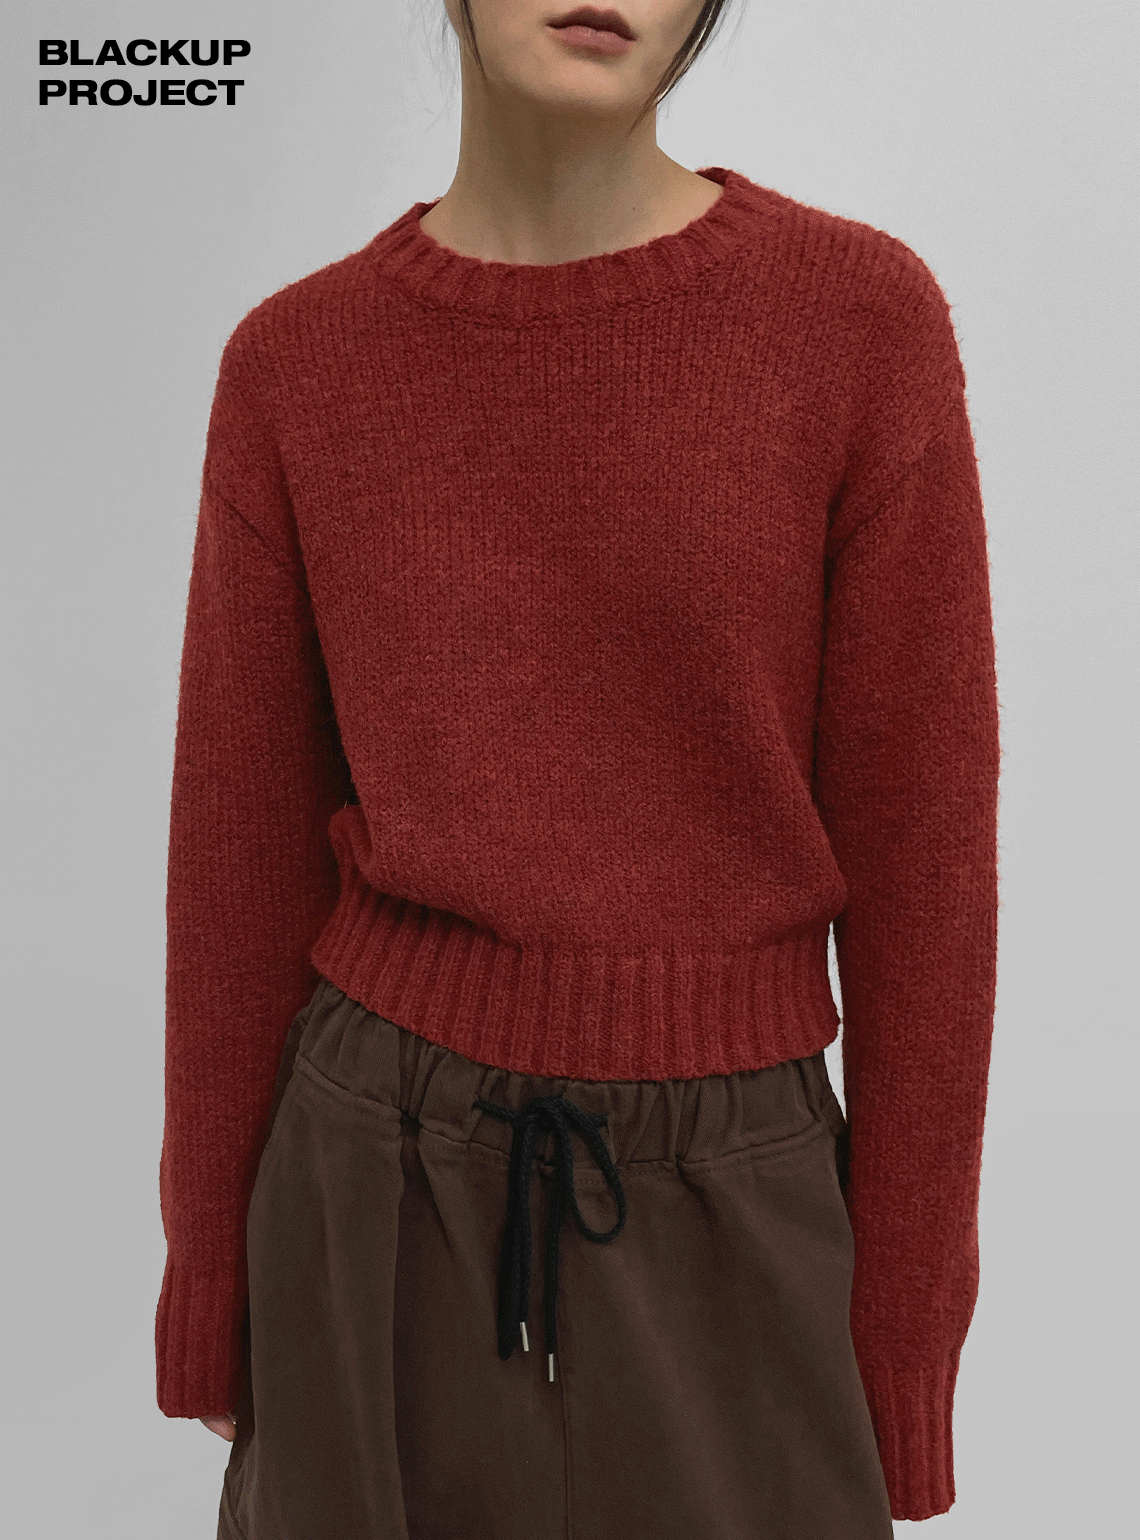 ワンピース❤️【送料込】ELENORE crop knit layered op